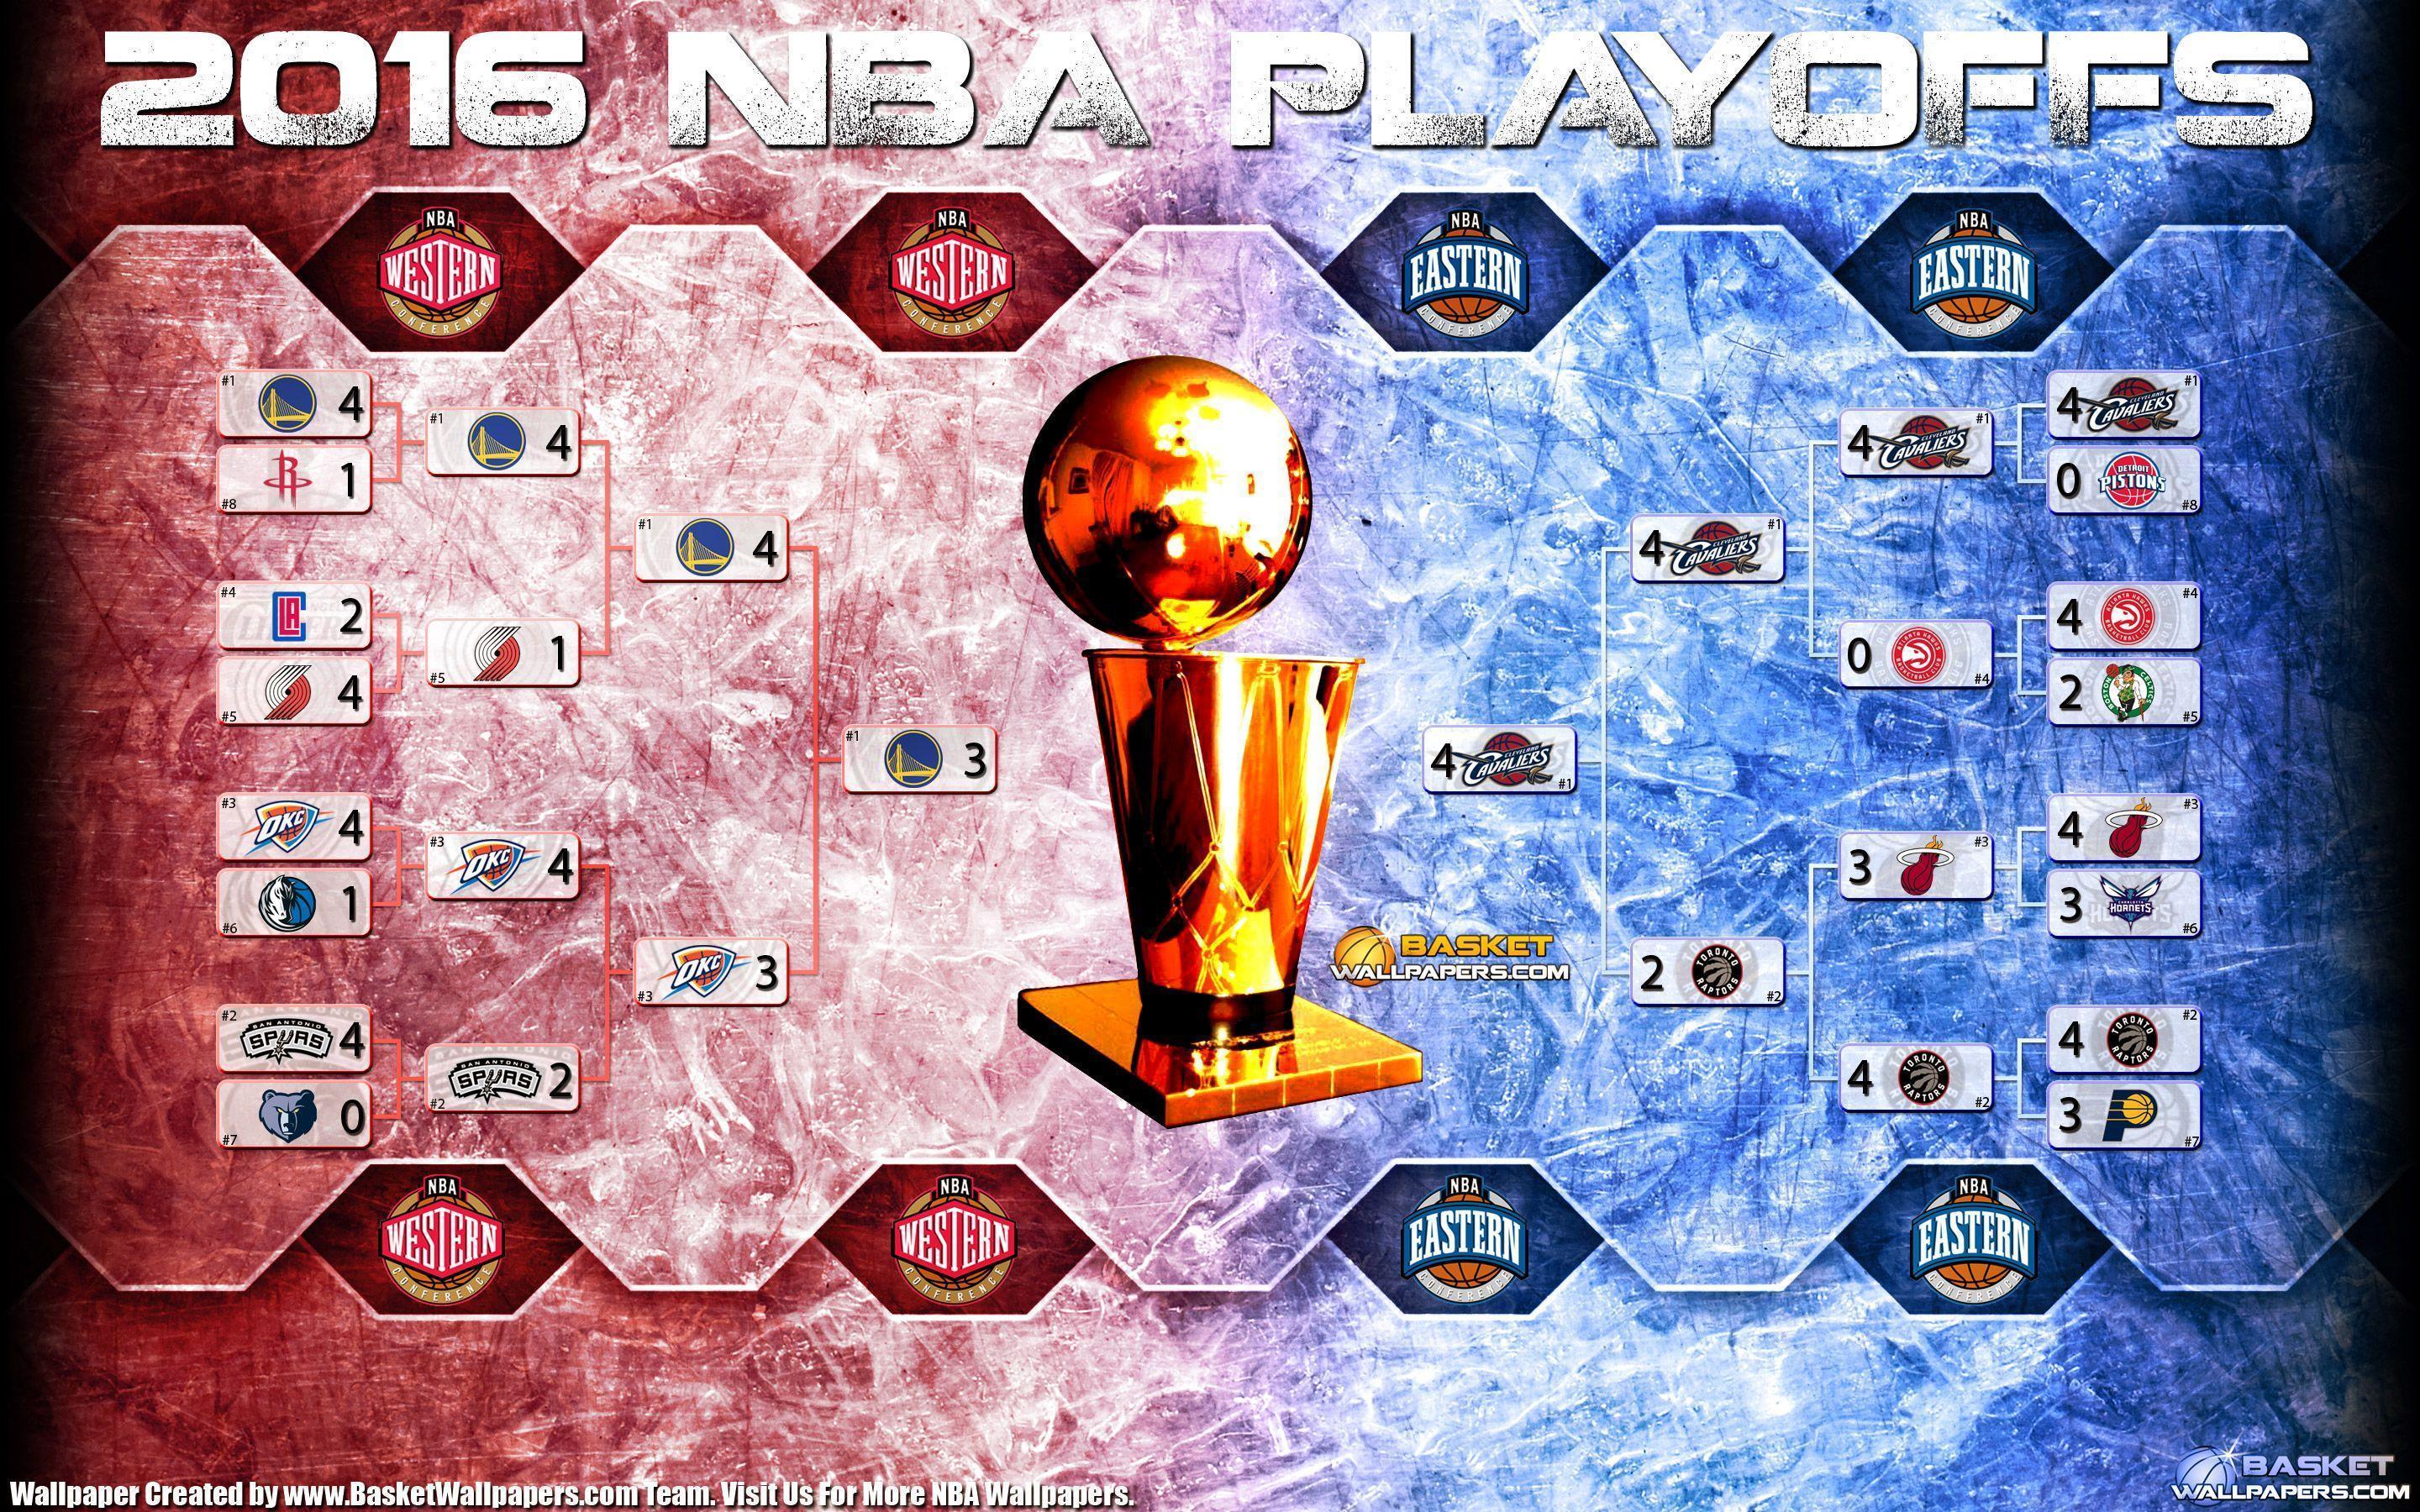 NBA Playoffs Bracket 2880×1800 Wallpaper. Basketball